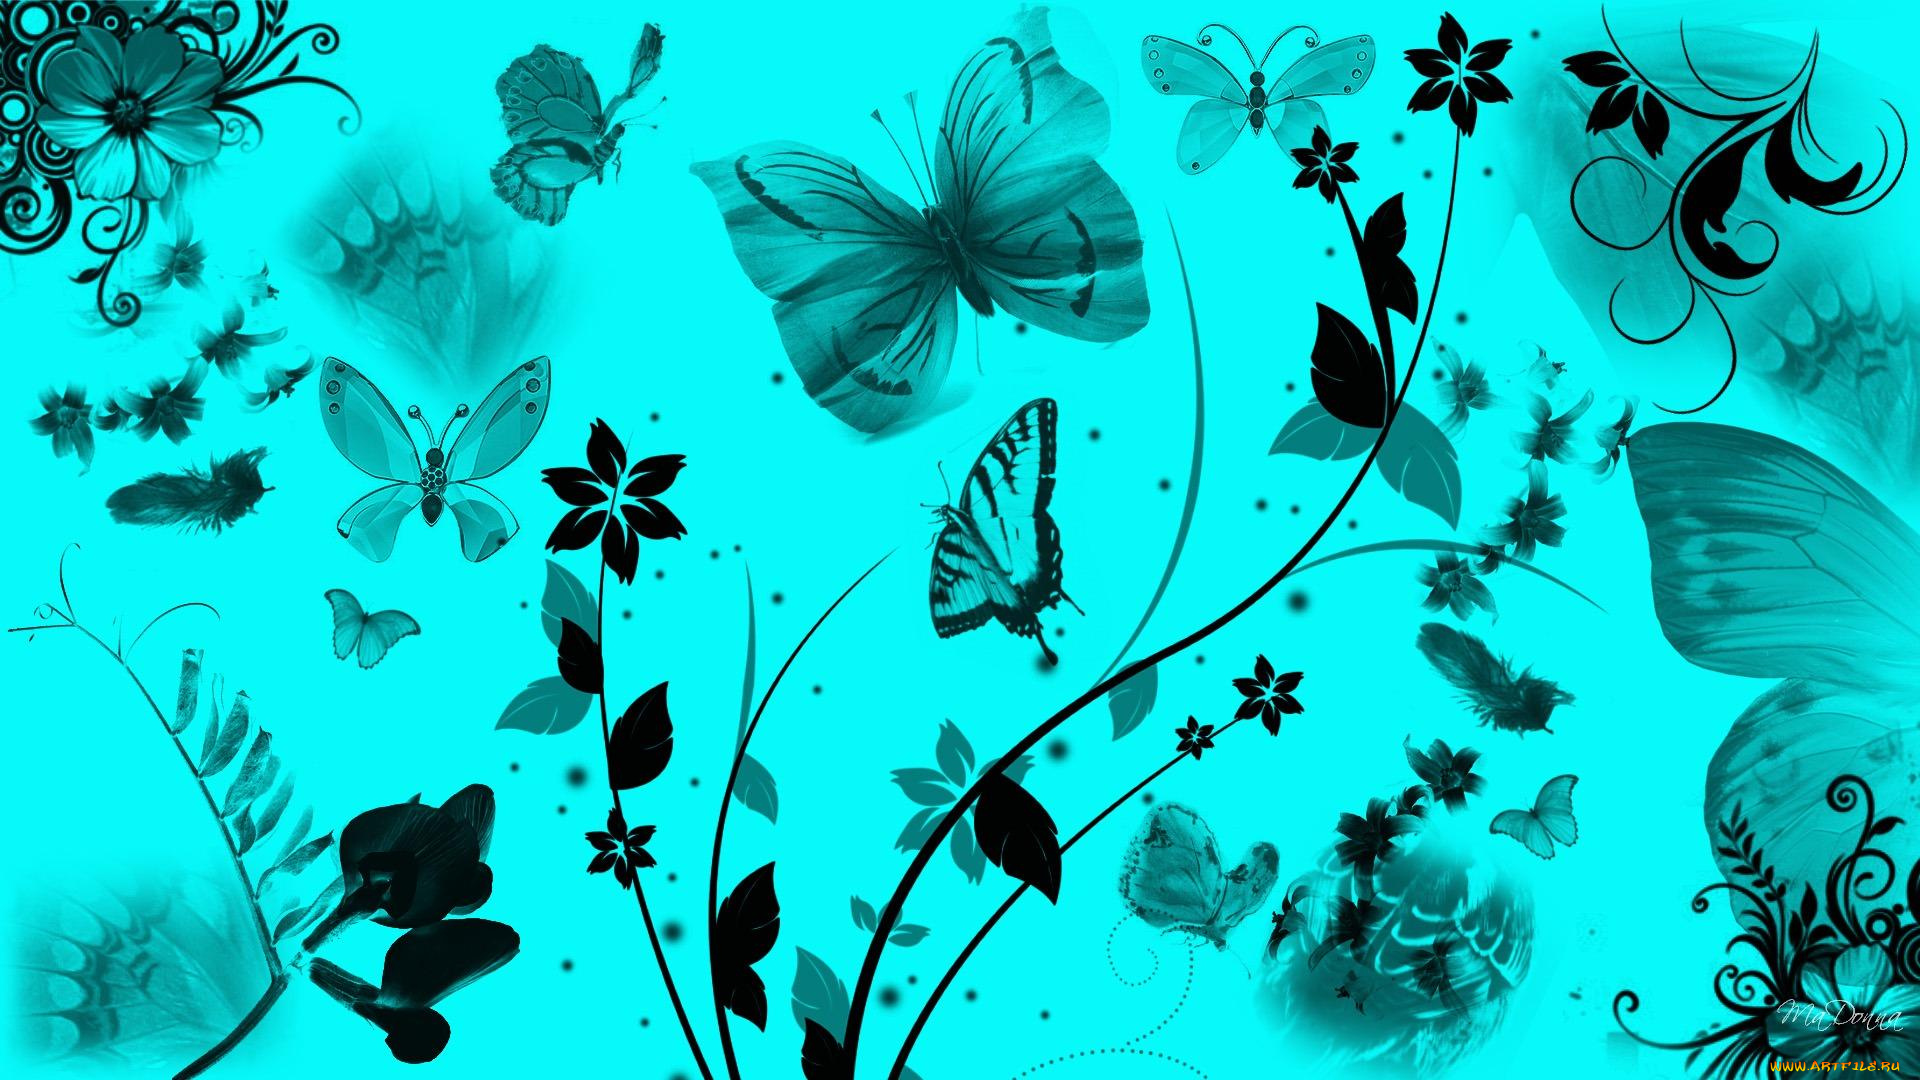 Обои на стол бабочки. Фон бабочки. Бабочки картинки красивые. Обои на рабочий стол бабочки. Красивый фон с бабочками.